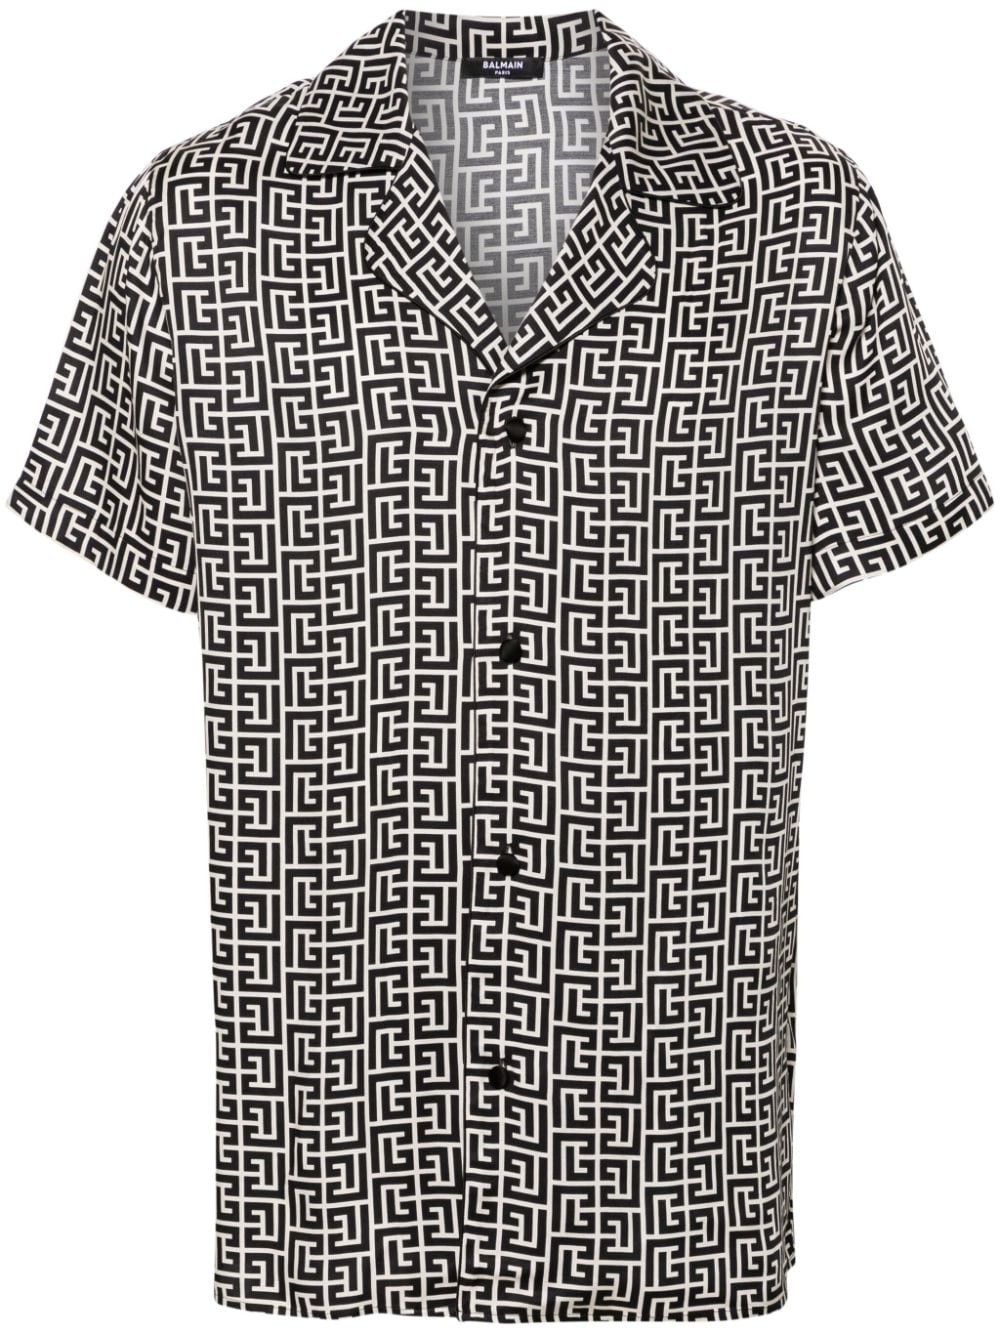 monogram-print short-sleeve shirt - 1